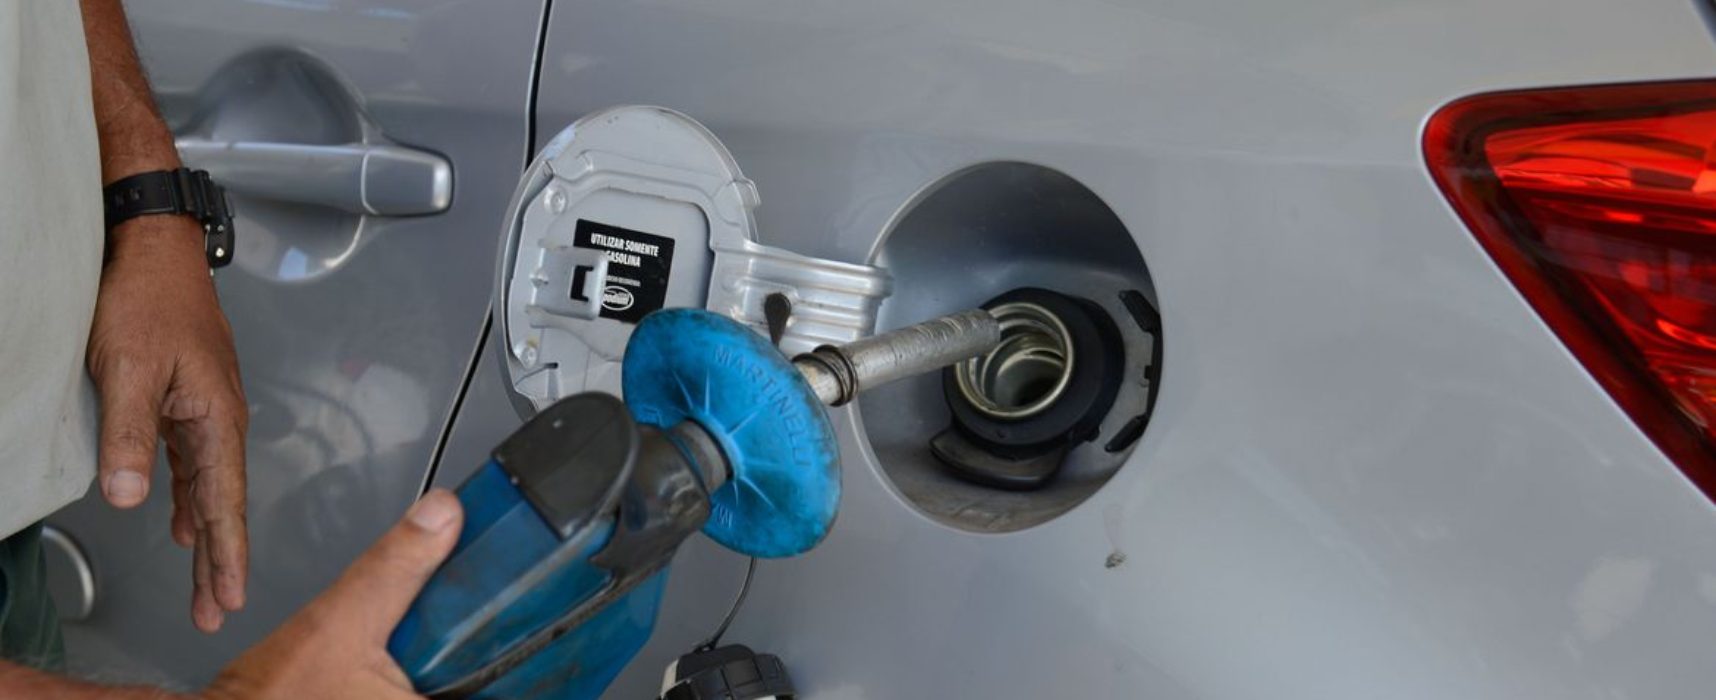 Decreto obriga postos a informarem composição do preço de combustíveis